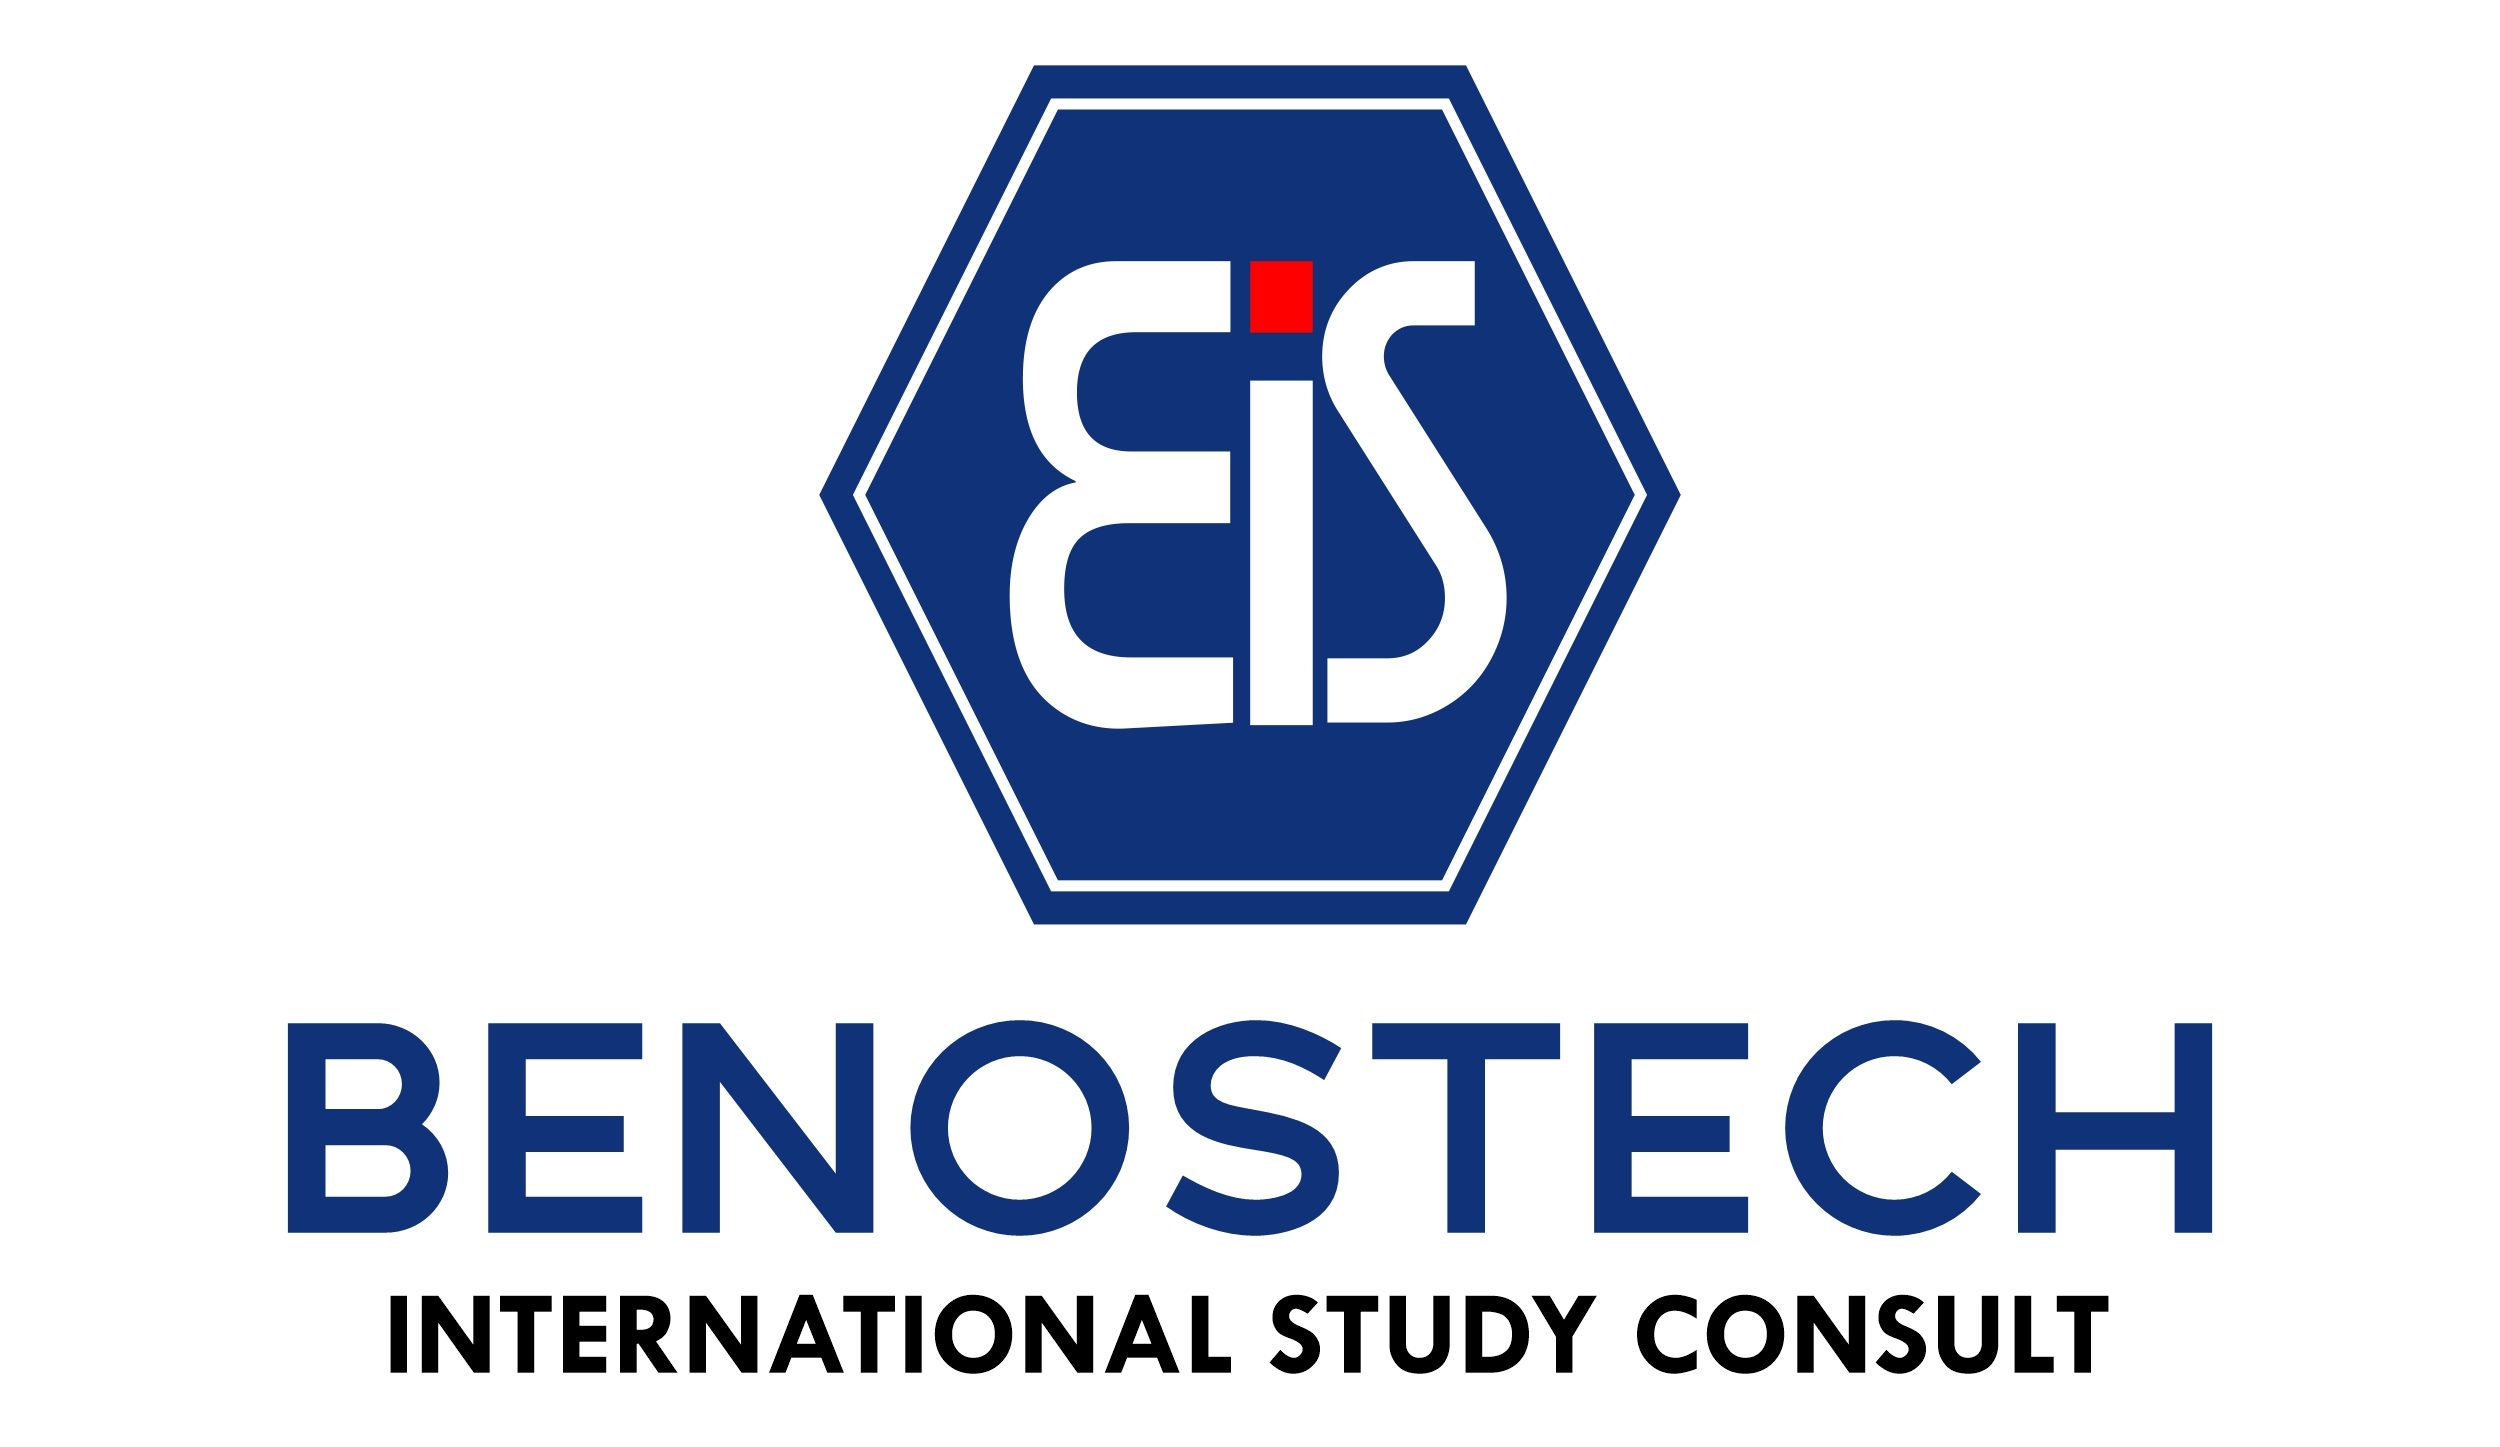 Benostech International Study Consult